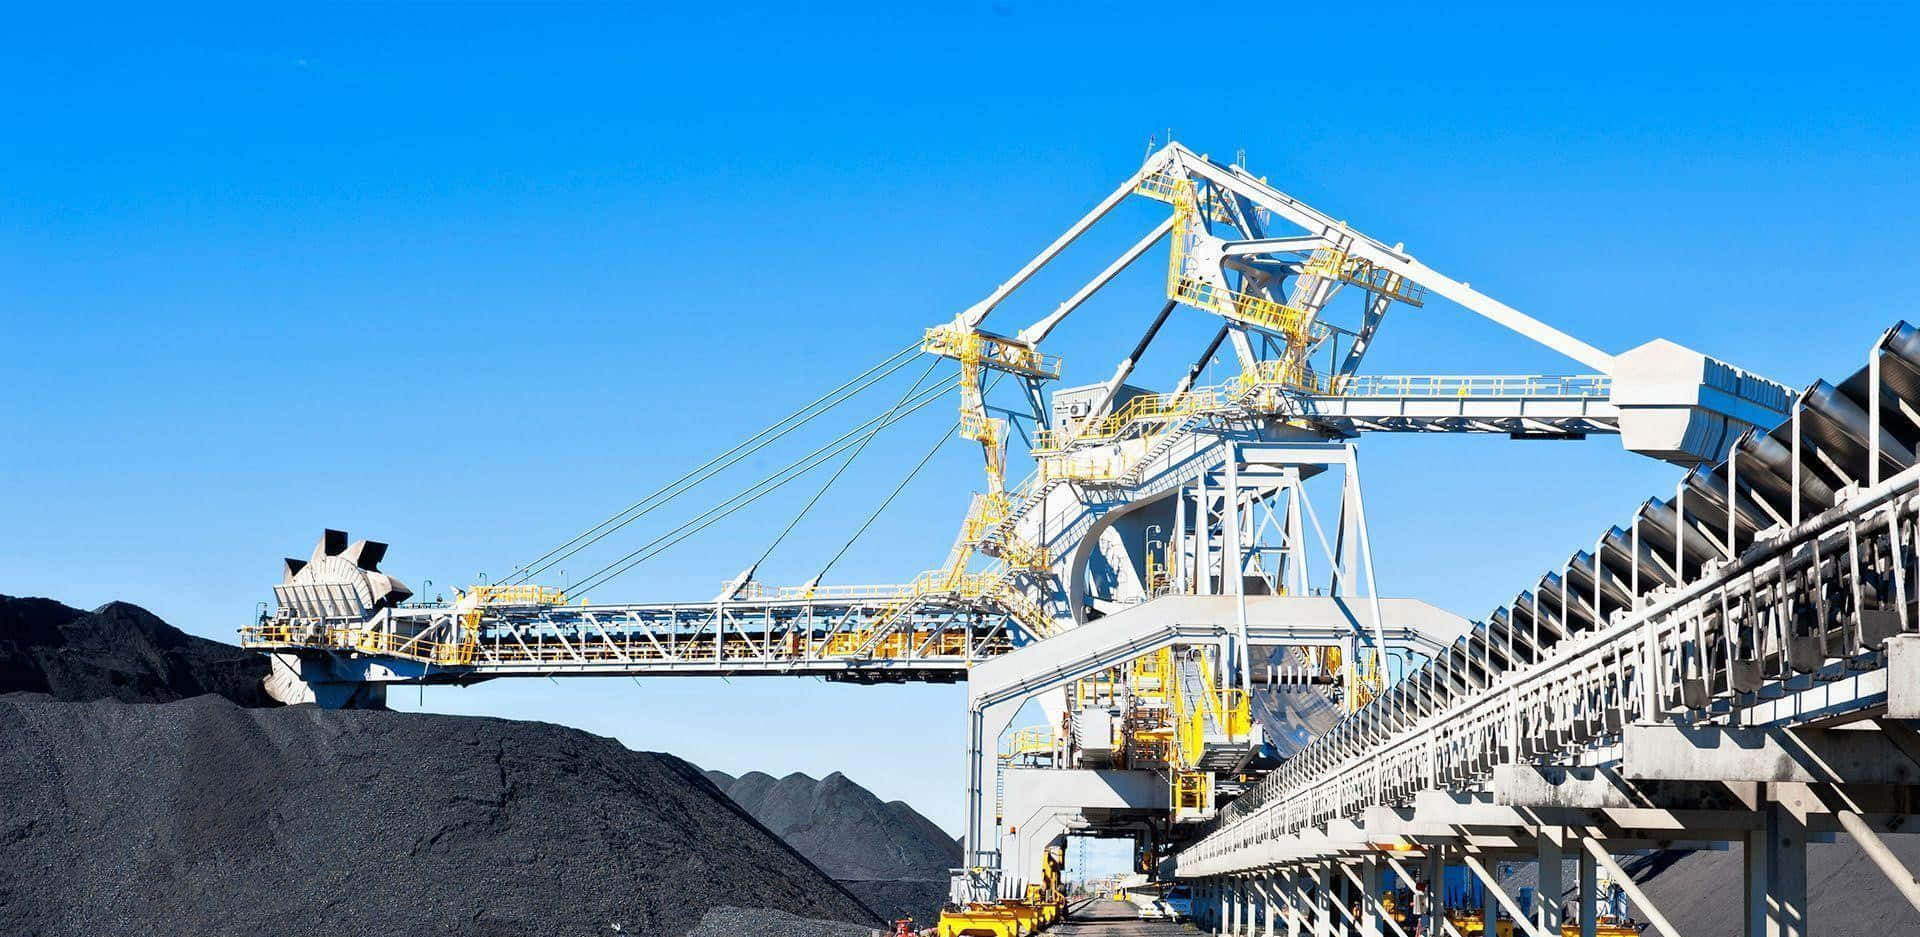 A Large Crane Is Lifting Coal